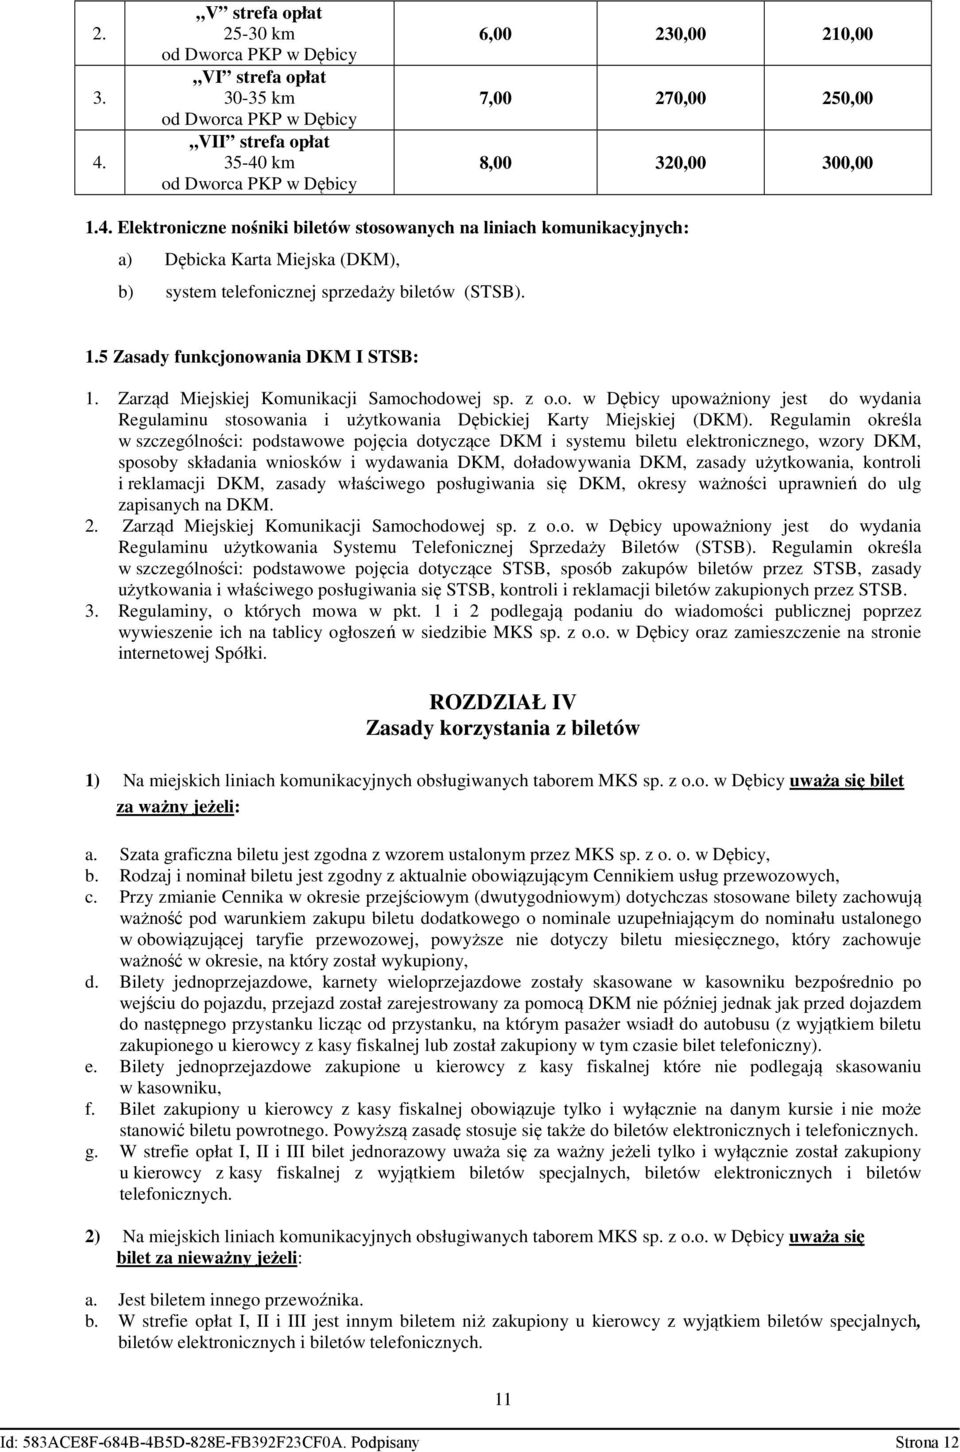 5 Zasady funkcjonowania DKM I STSB: Zarząd Miejskiej Komunikacji Samochodowej sp. z o.o. w Dębicy upoważniony jest do wydania Regulaminu stosowania i użytkowania Dębickiej Karty Miejskiej (DKM).